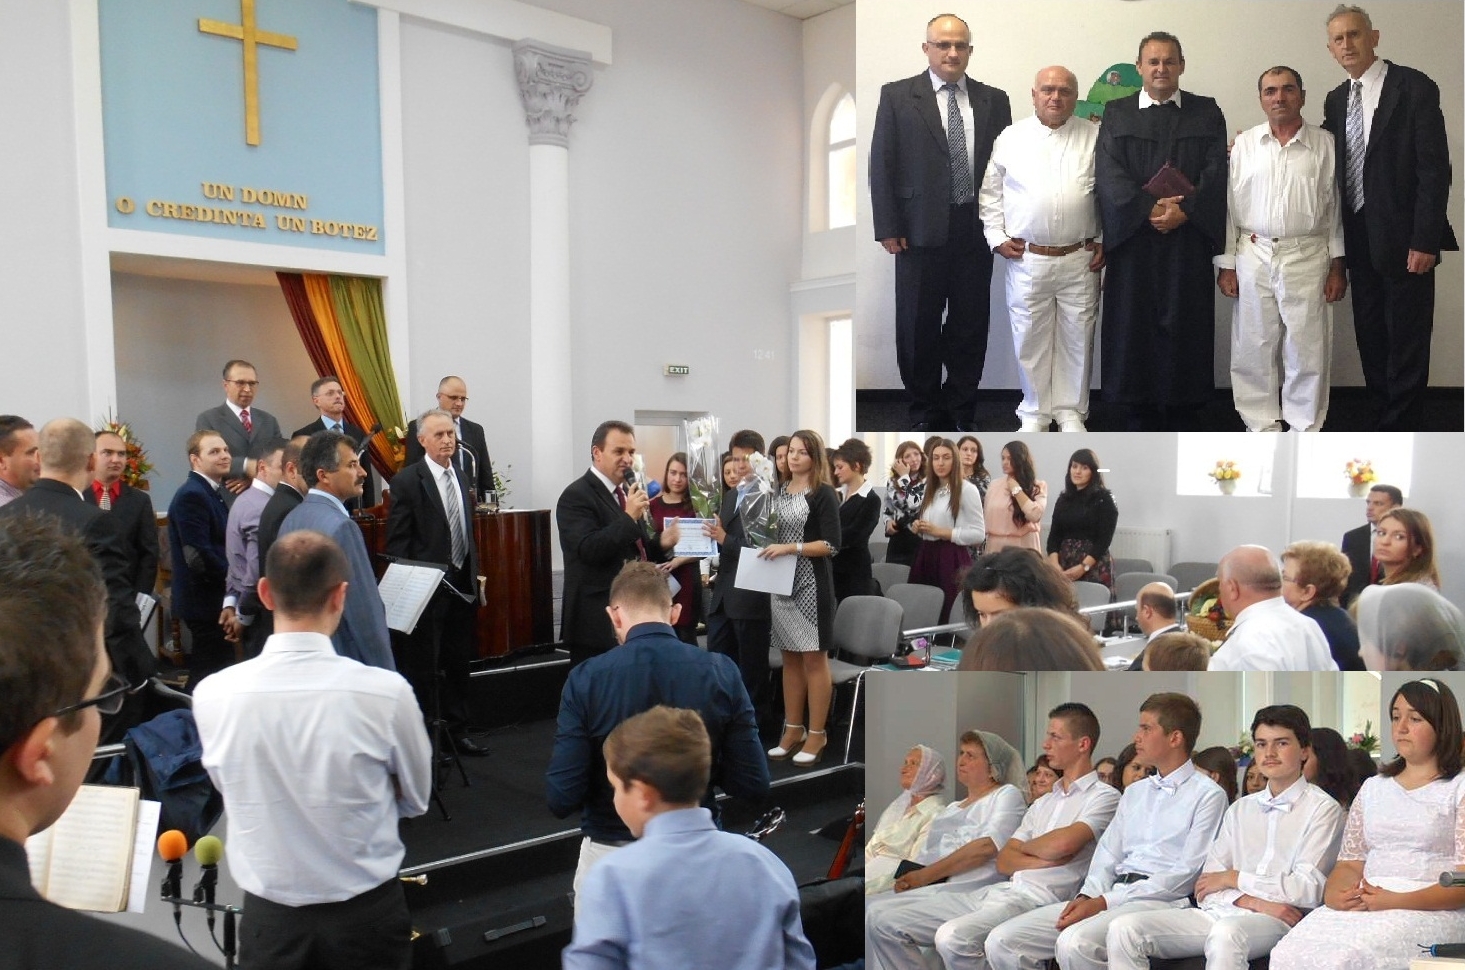 Biserica baptistă „Providența” din Tulca - O națiune supusă lui Dumnezeu